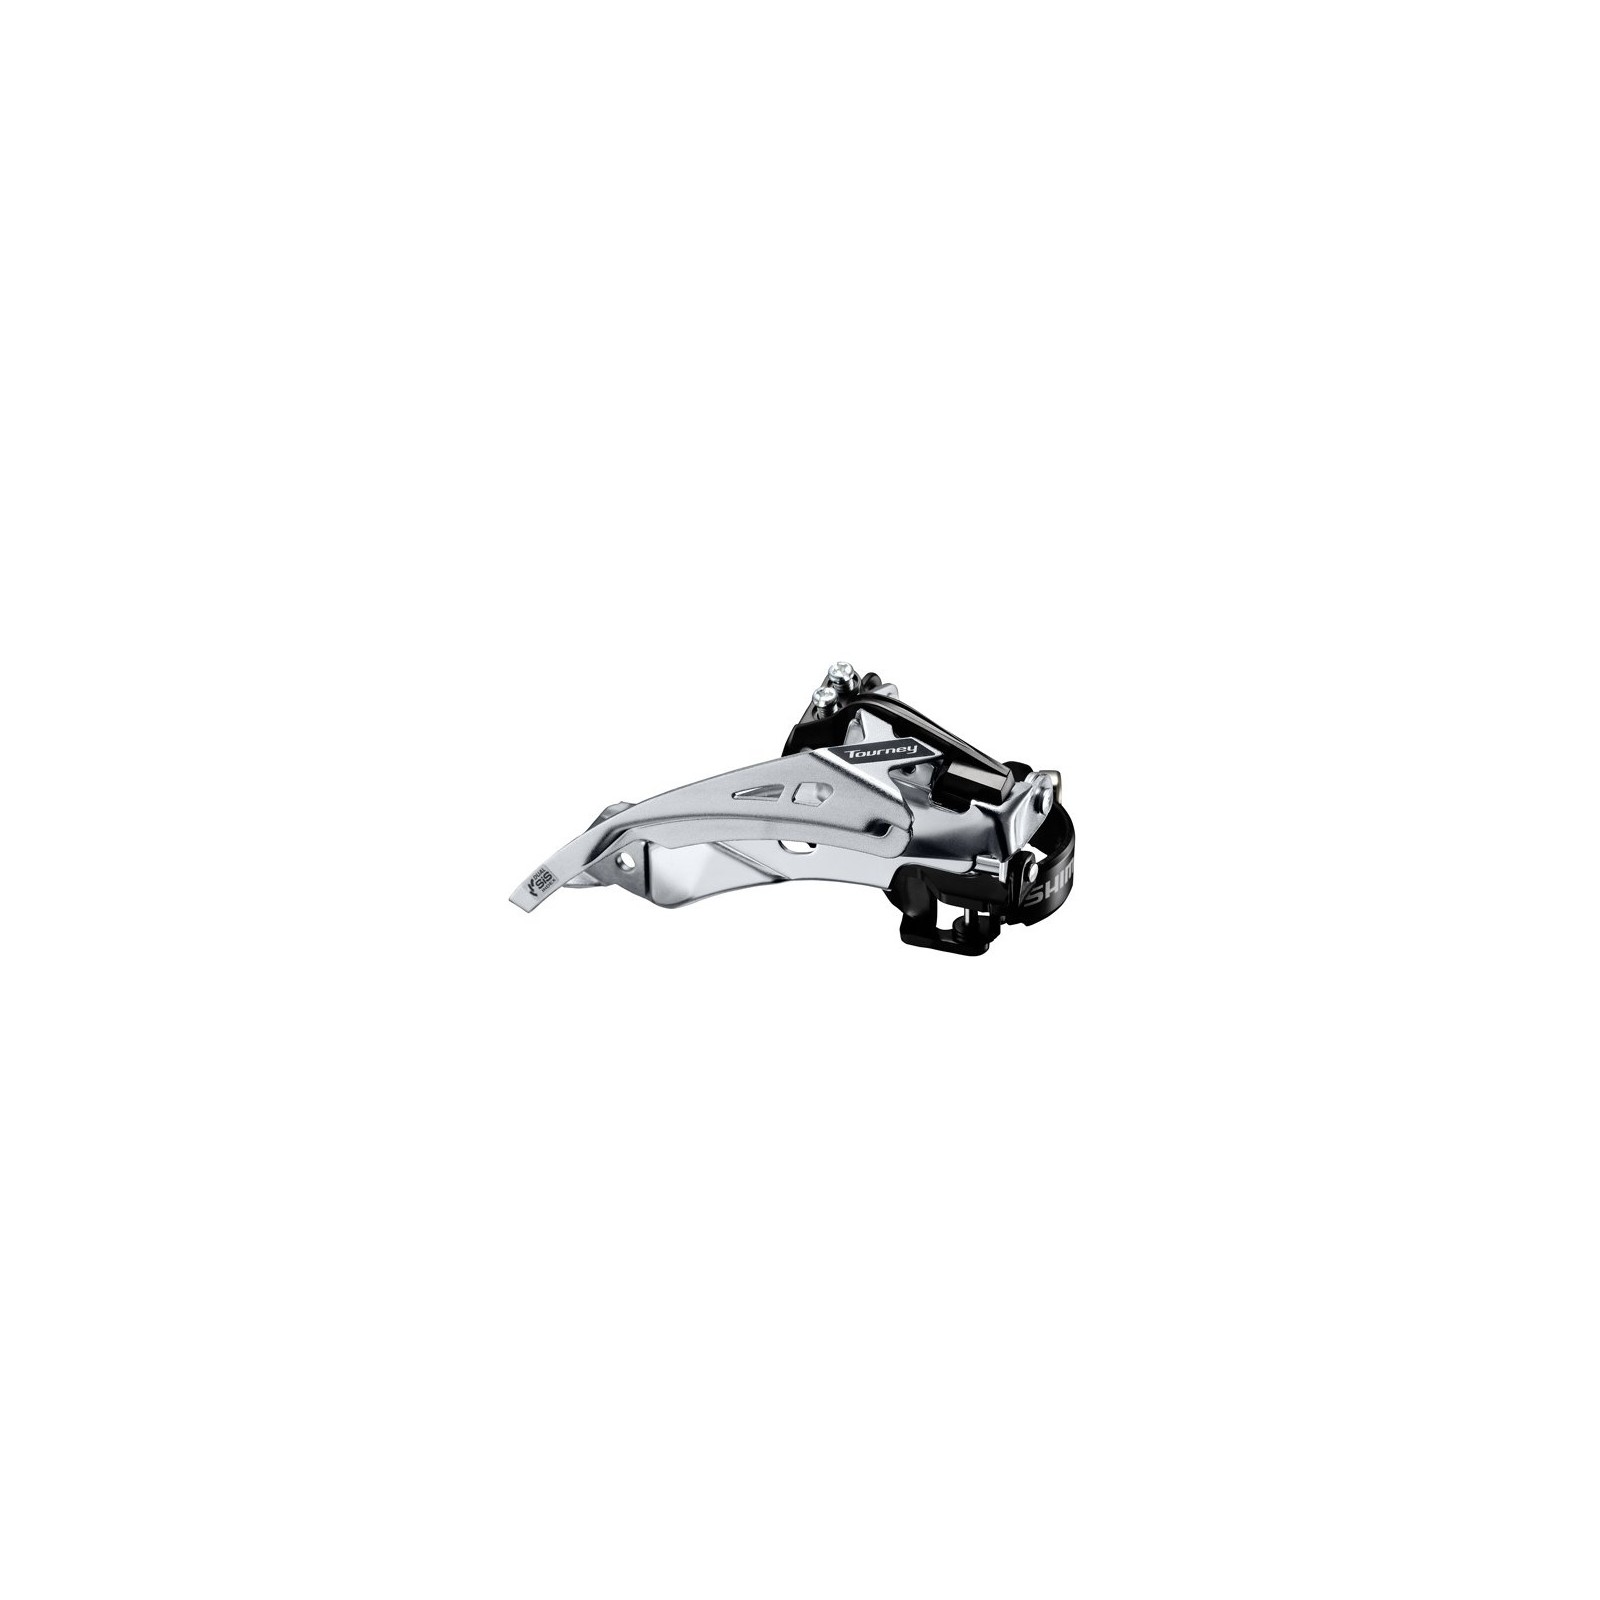 Przerzutka Shimano przednia 3rz TY710 48T 34,9/31,8/28,6 Top S Dual Pull - FDTY710TSX6